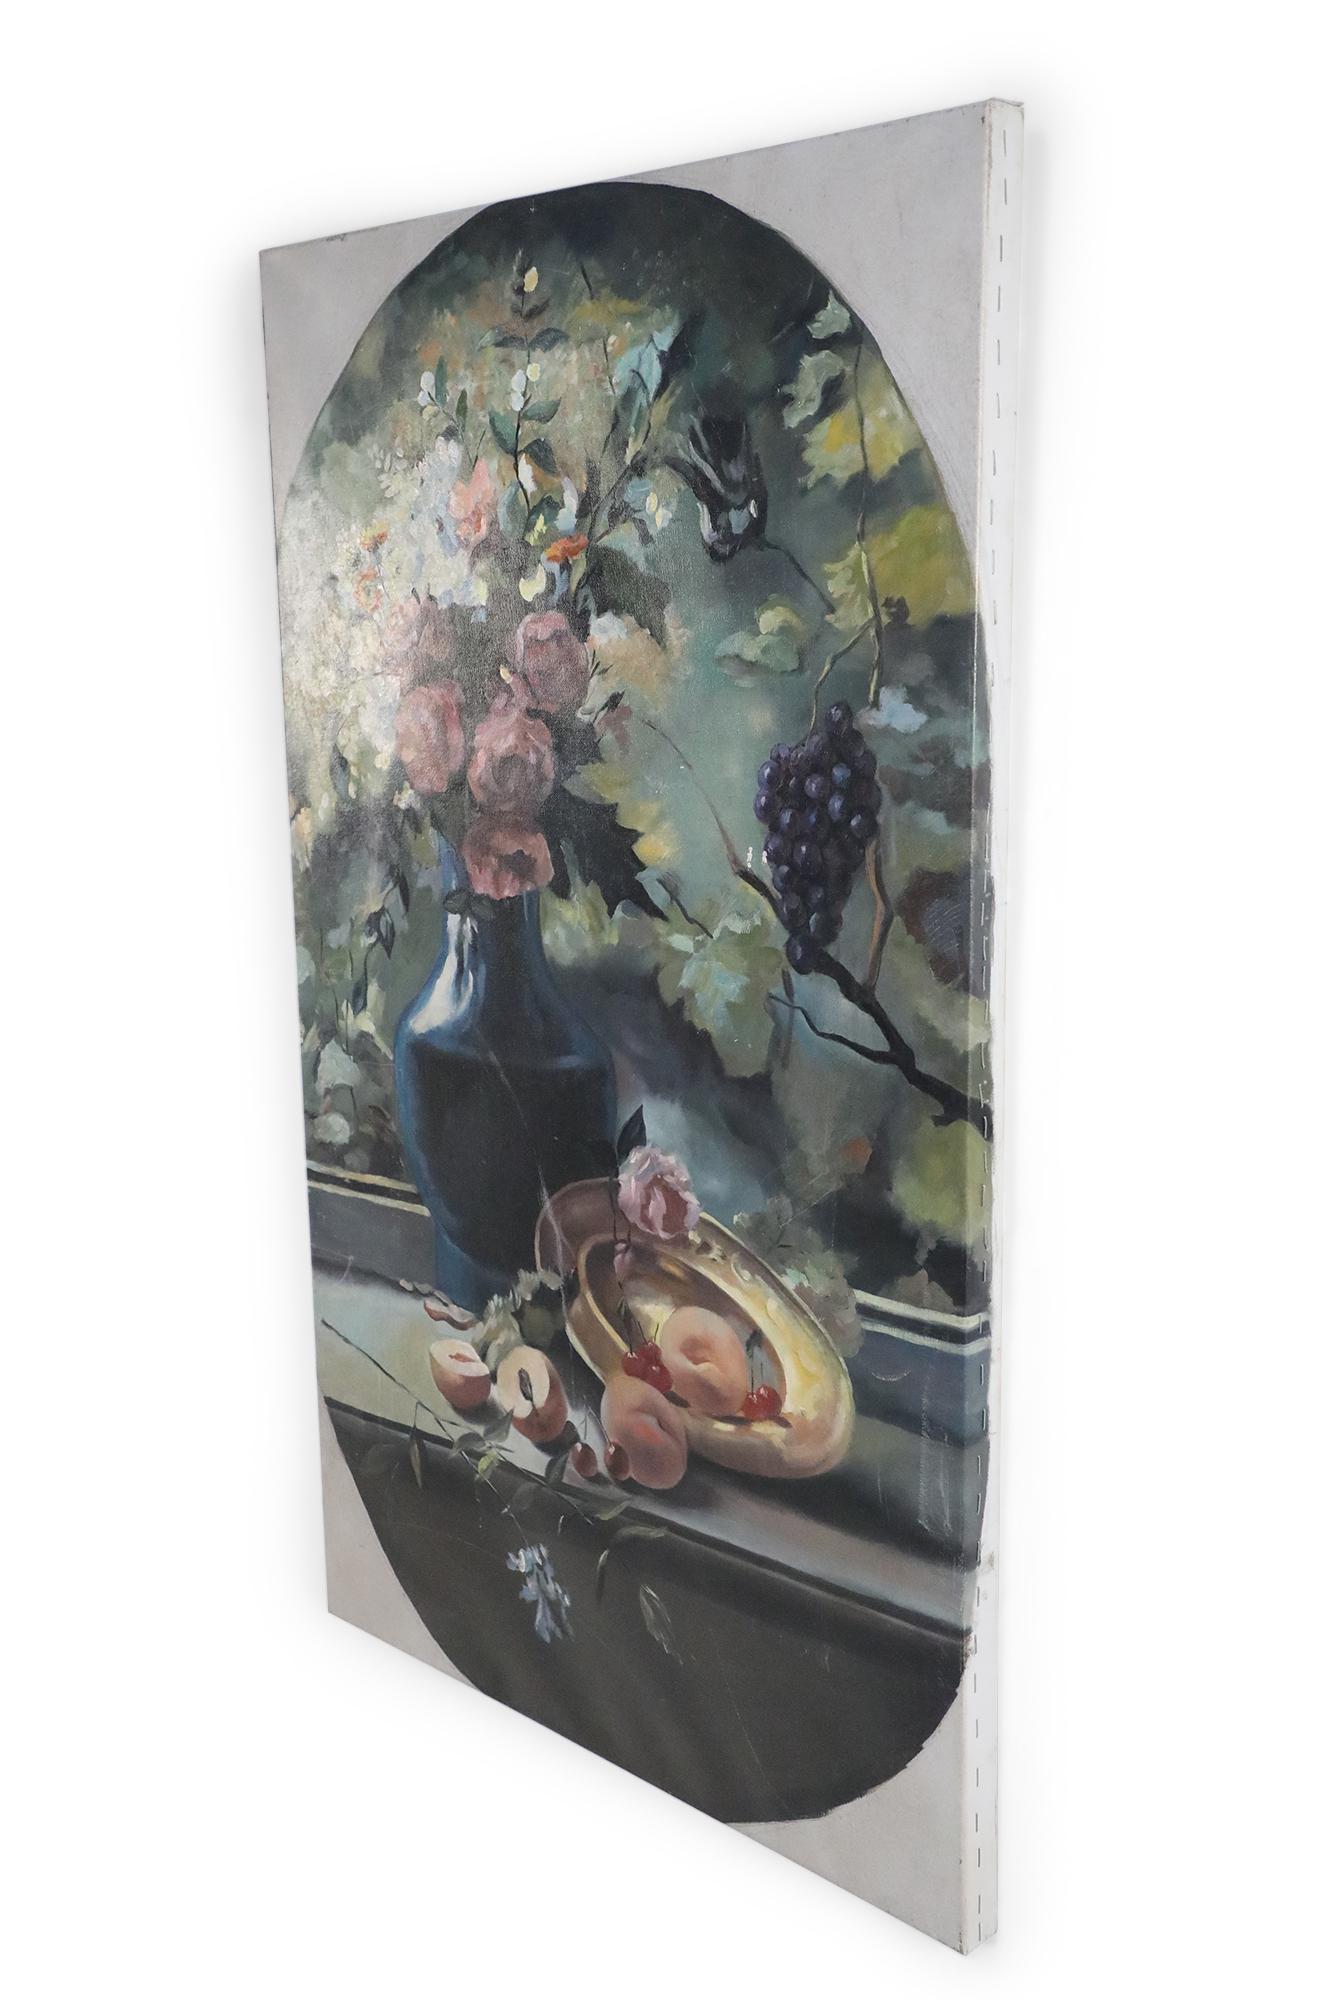 Vieille peinture à l'huile (20ème siècle) non encadrée représentant un vase bleu rempli de fleurs roses, jaunes et blanches derrière un plateau doré, renversant des pêches et des cerises sur la surface, et un cadre naturel avec des vignes en